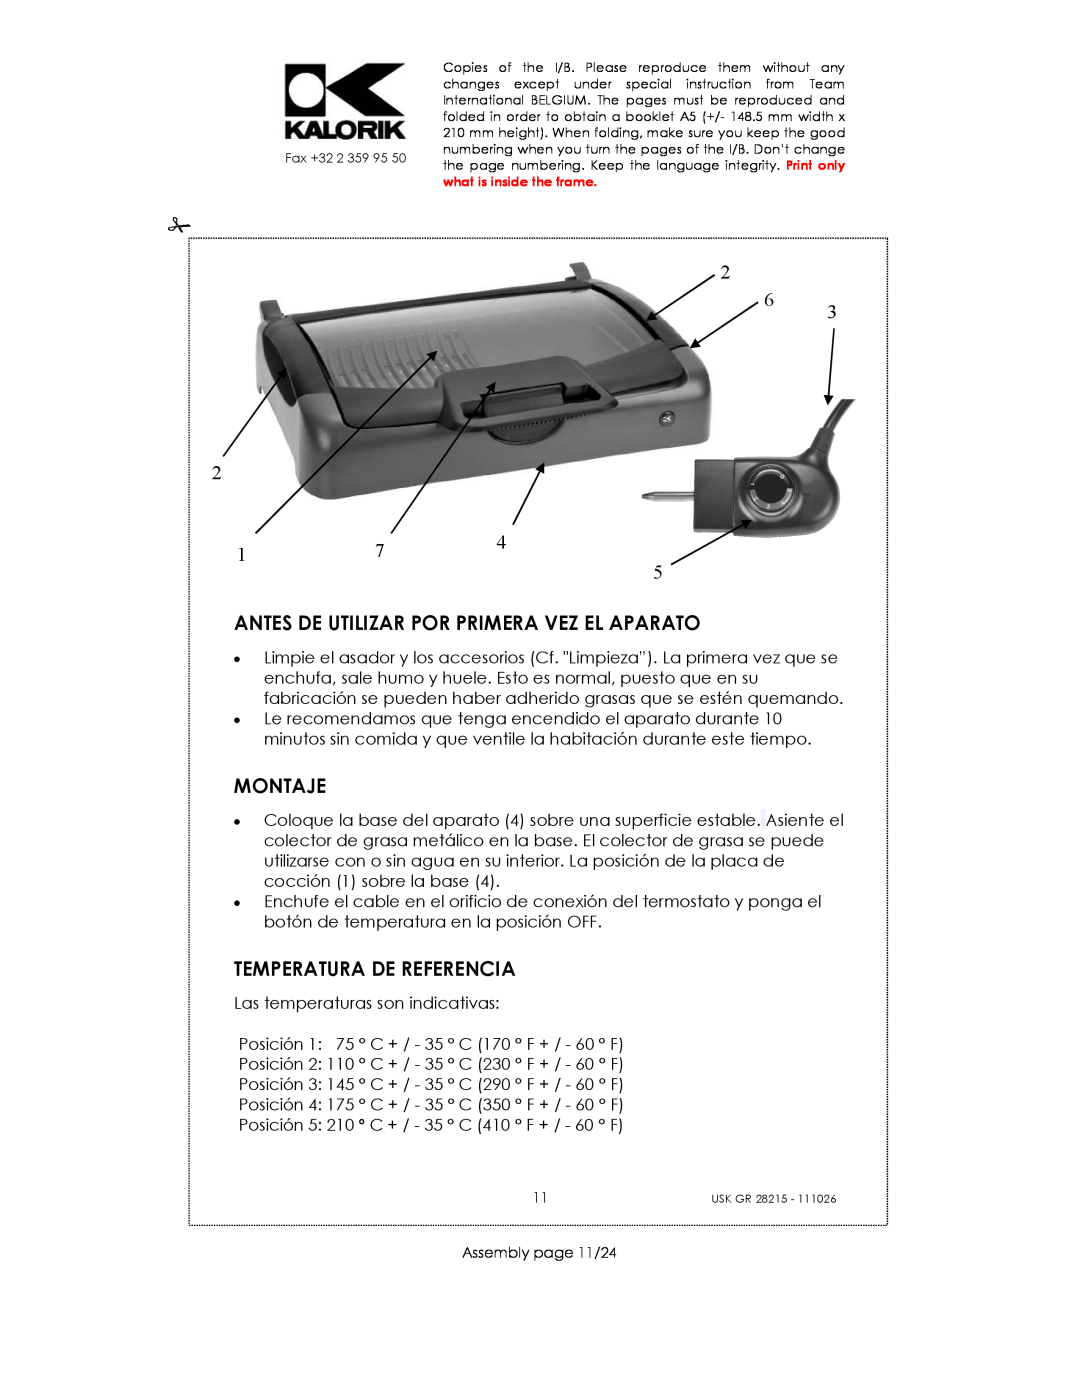 Kalorik USK GR 28215 manual Antes De Utilizar Por Primera Vez El Aparato, Montaje, Temperatura De Referencia 